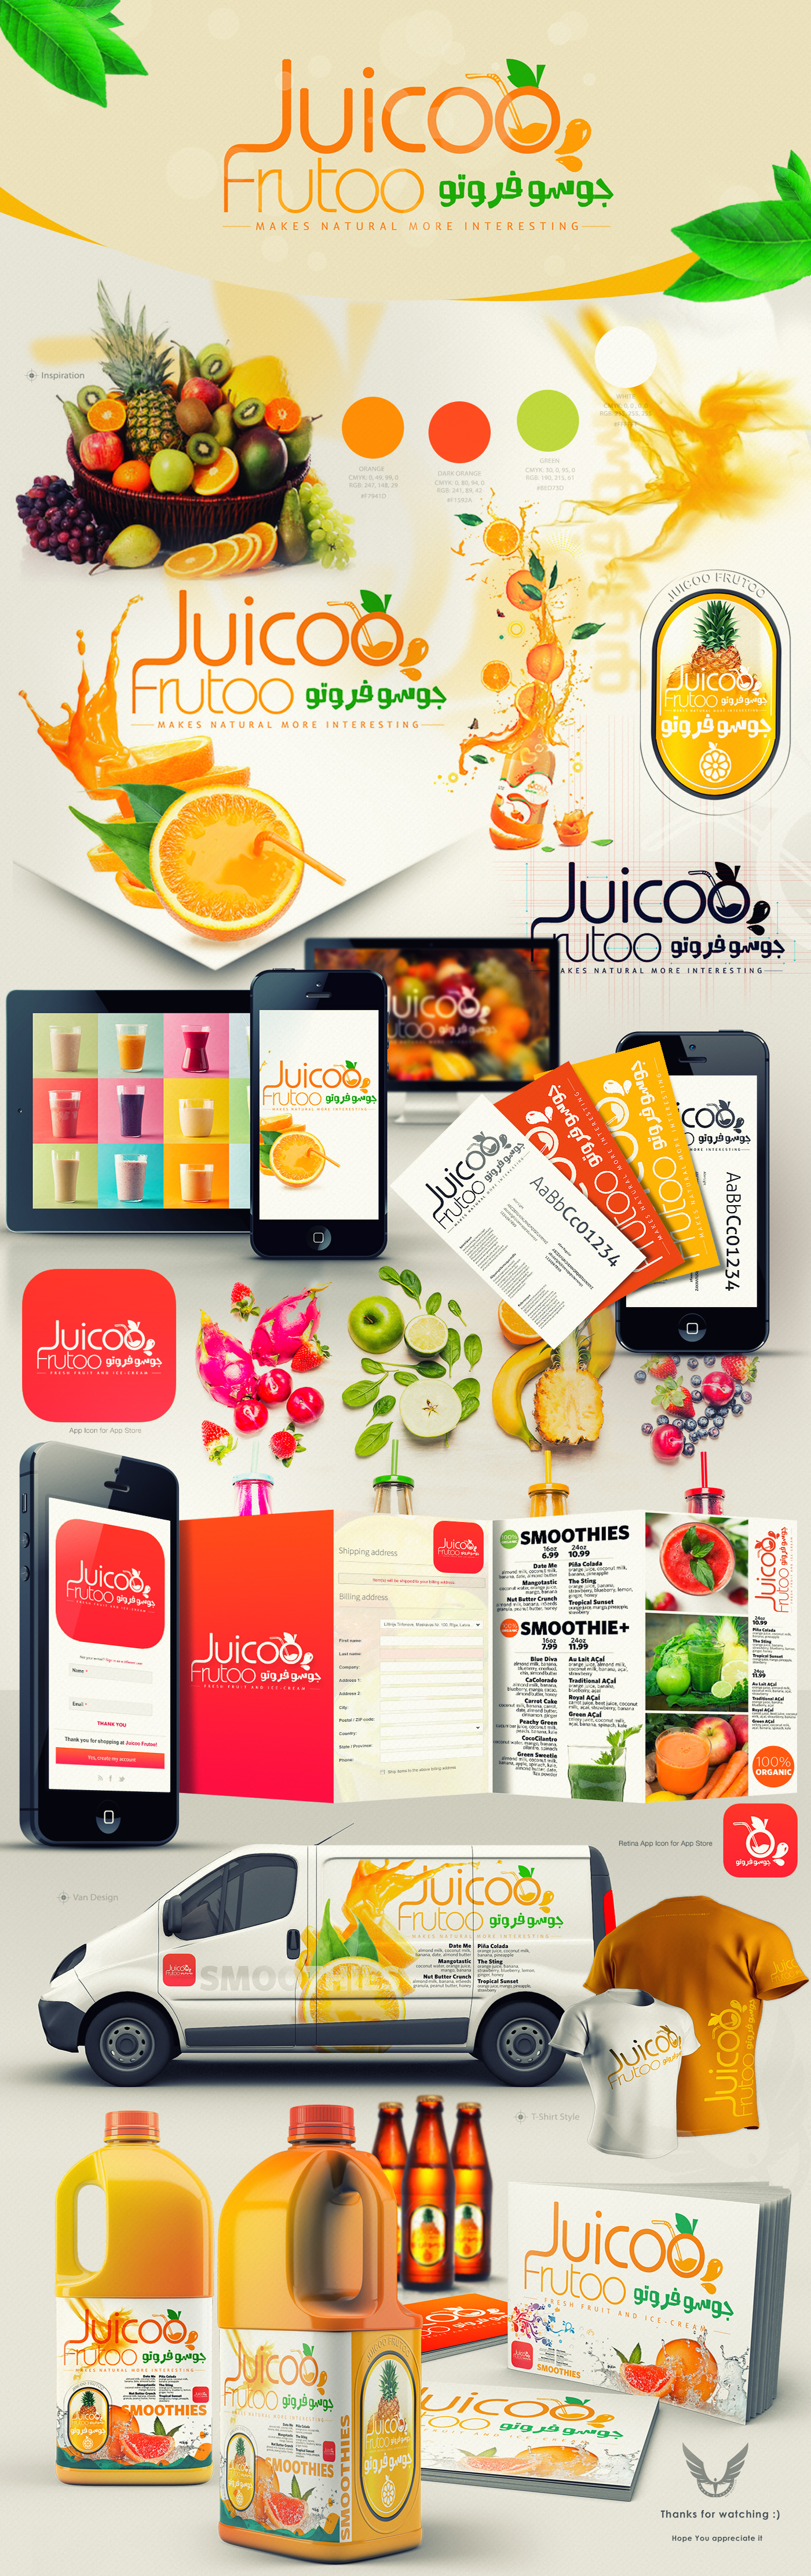 Logo Design logo artwork Fruit Juicoo Frutoo